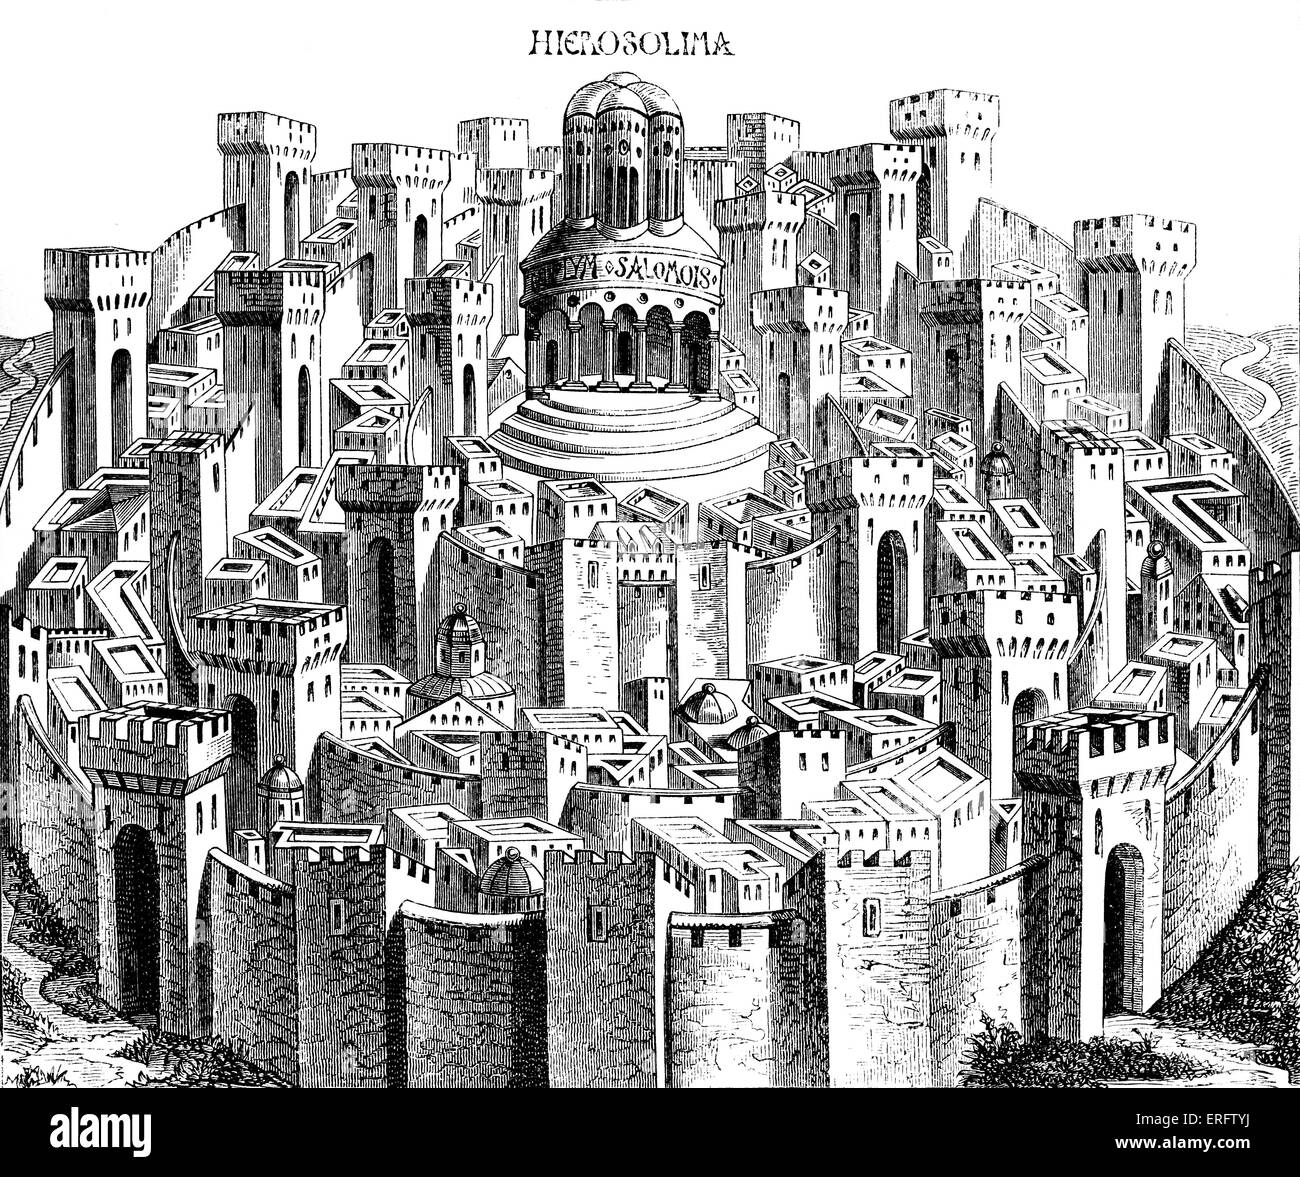 Piano medievale di Gerusalemme. Da una xilografia nel "Liber chronicarum mundi". Folio Norimberga 1493. Foto Stock